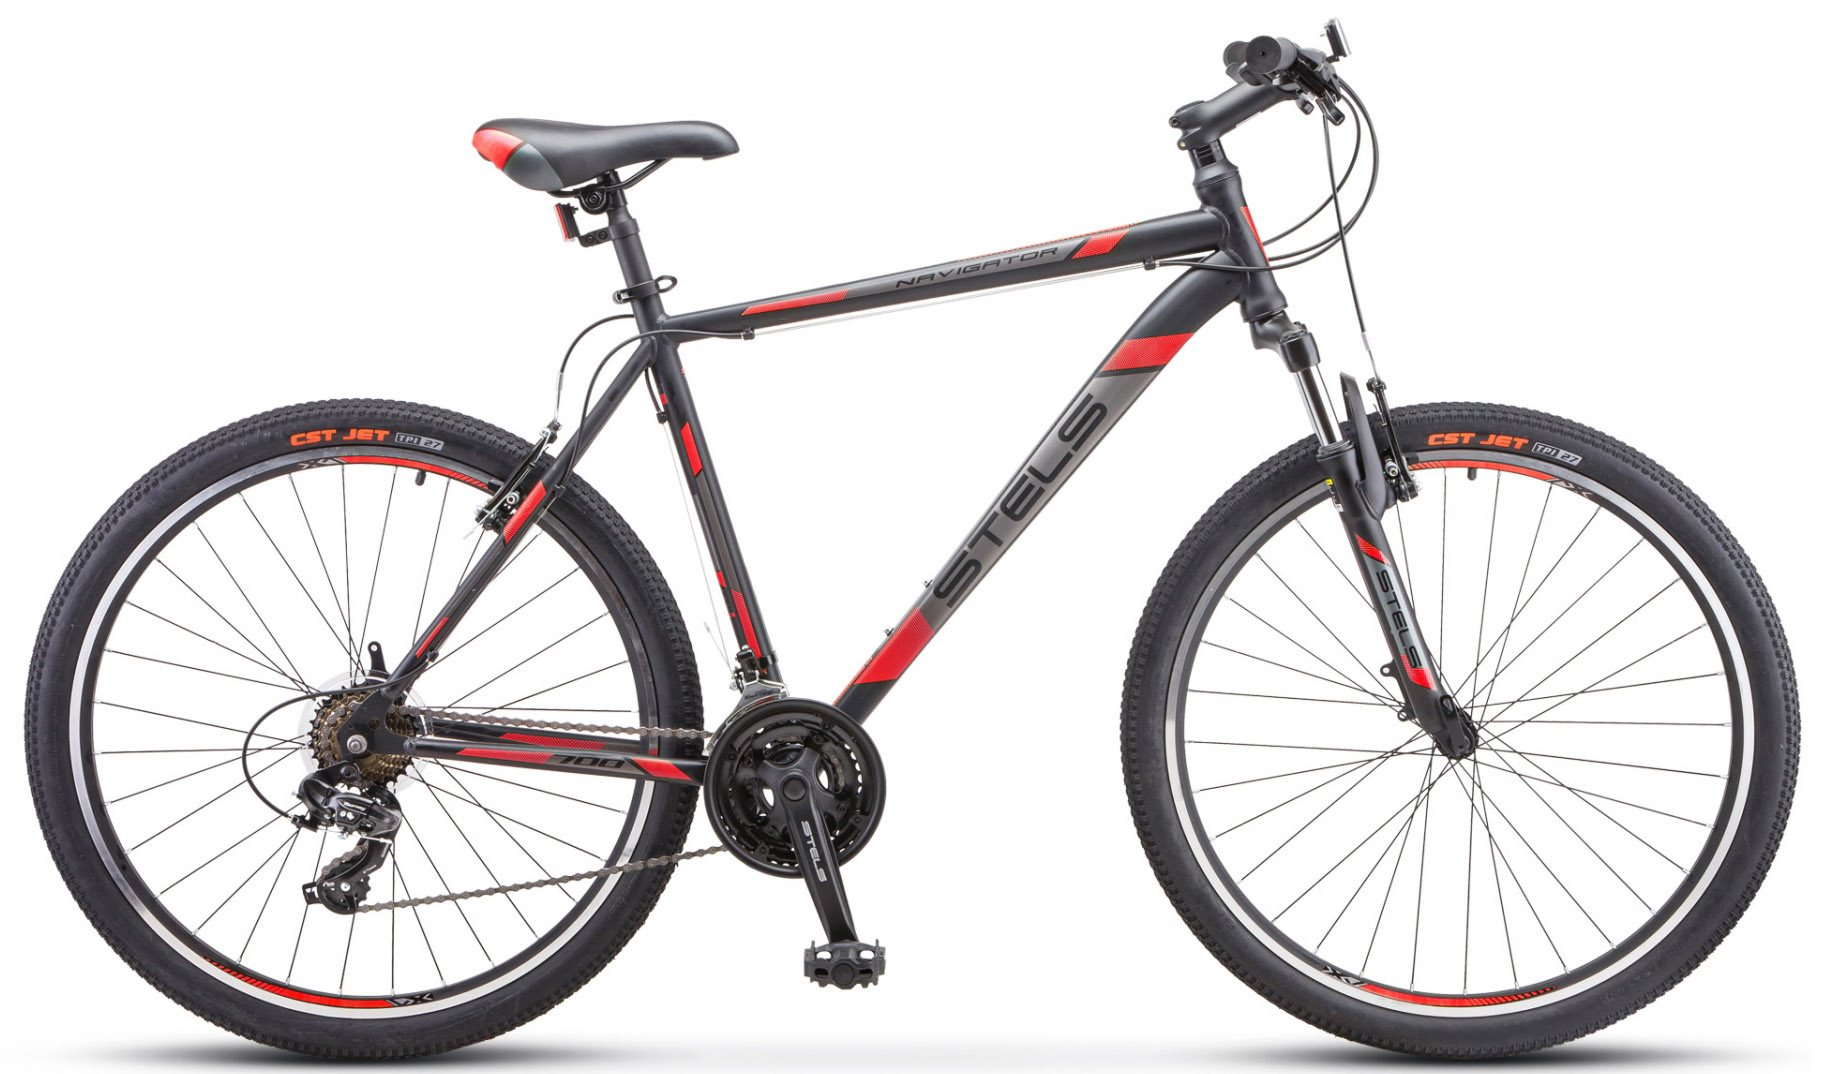  Отзывы о Горном велосипеде Stels Navigator 700 V F010 2019